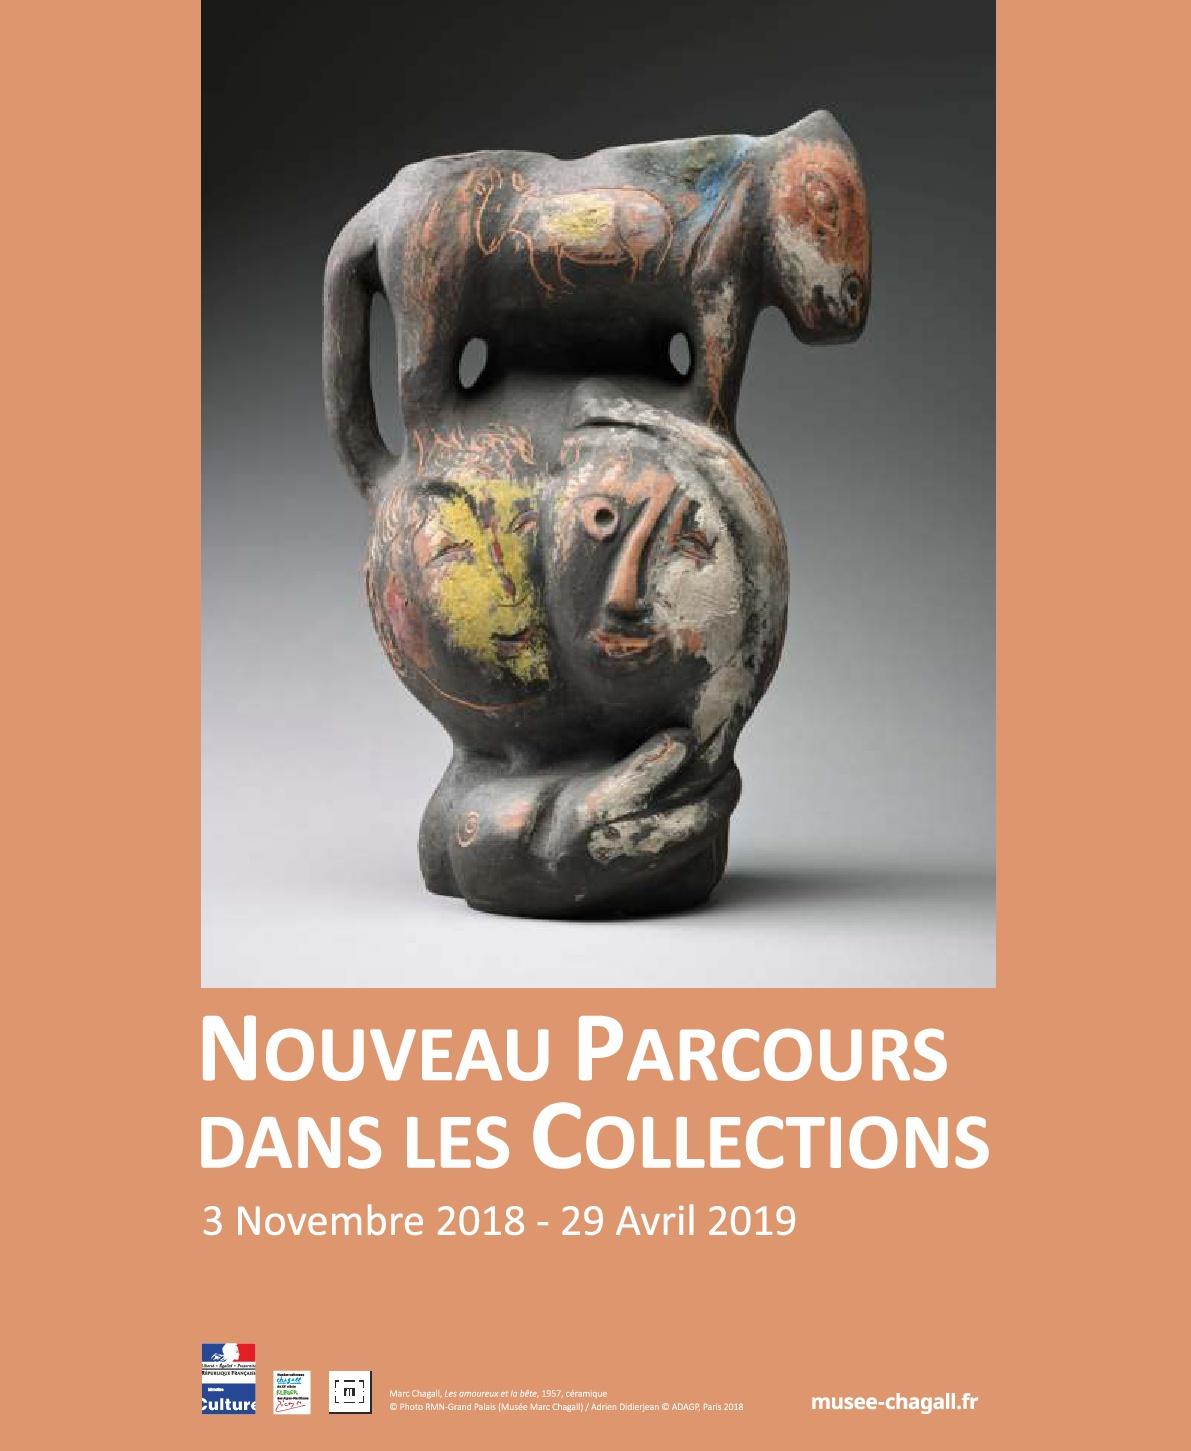 Affiche Chagall Acquisitions nouveau parcours collections 2018-2019